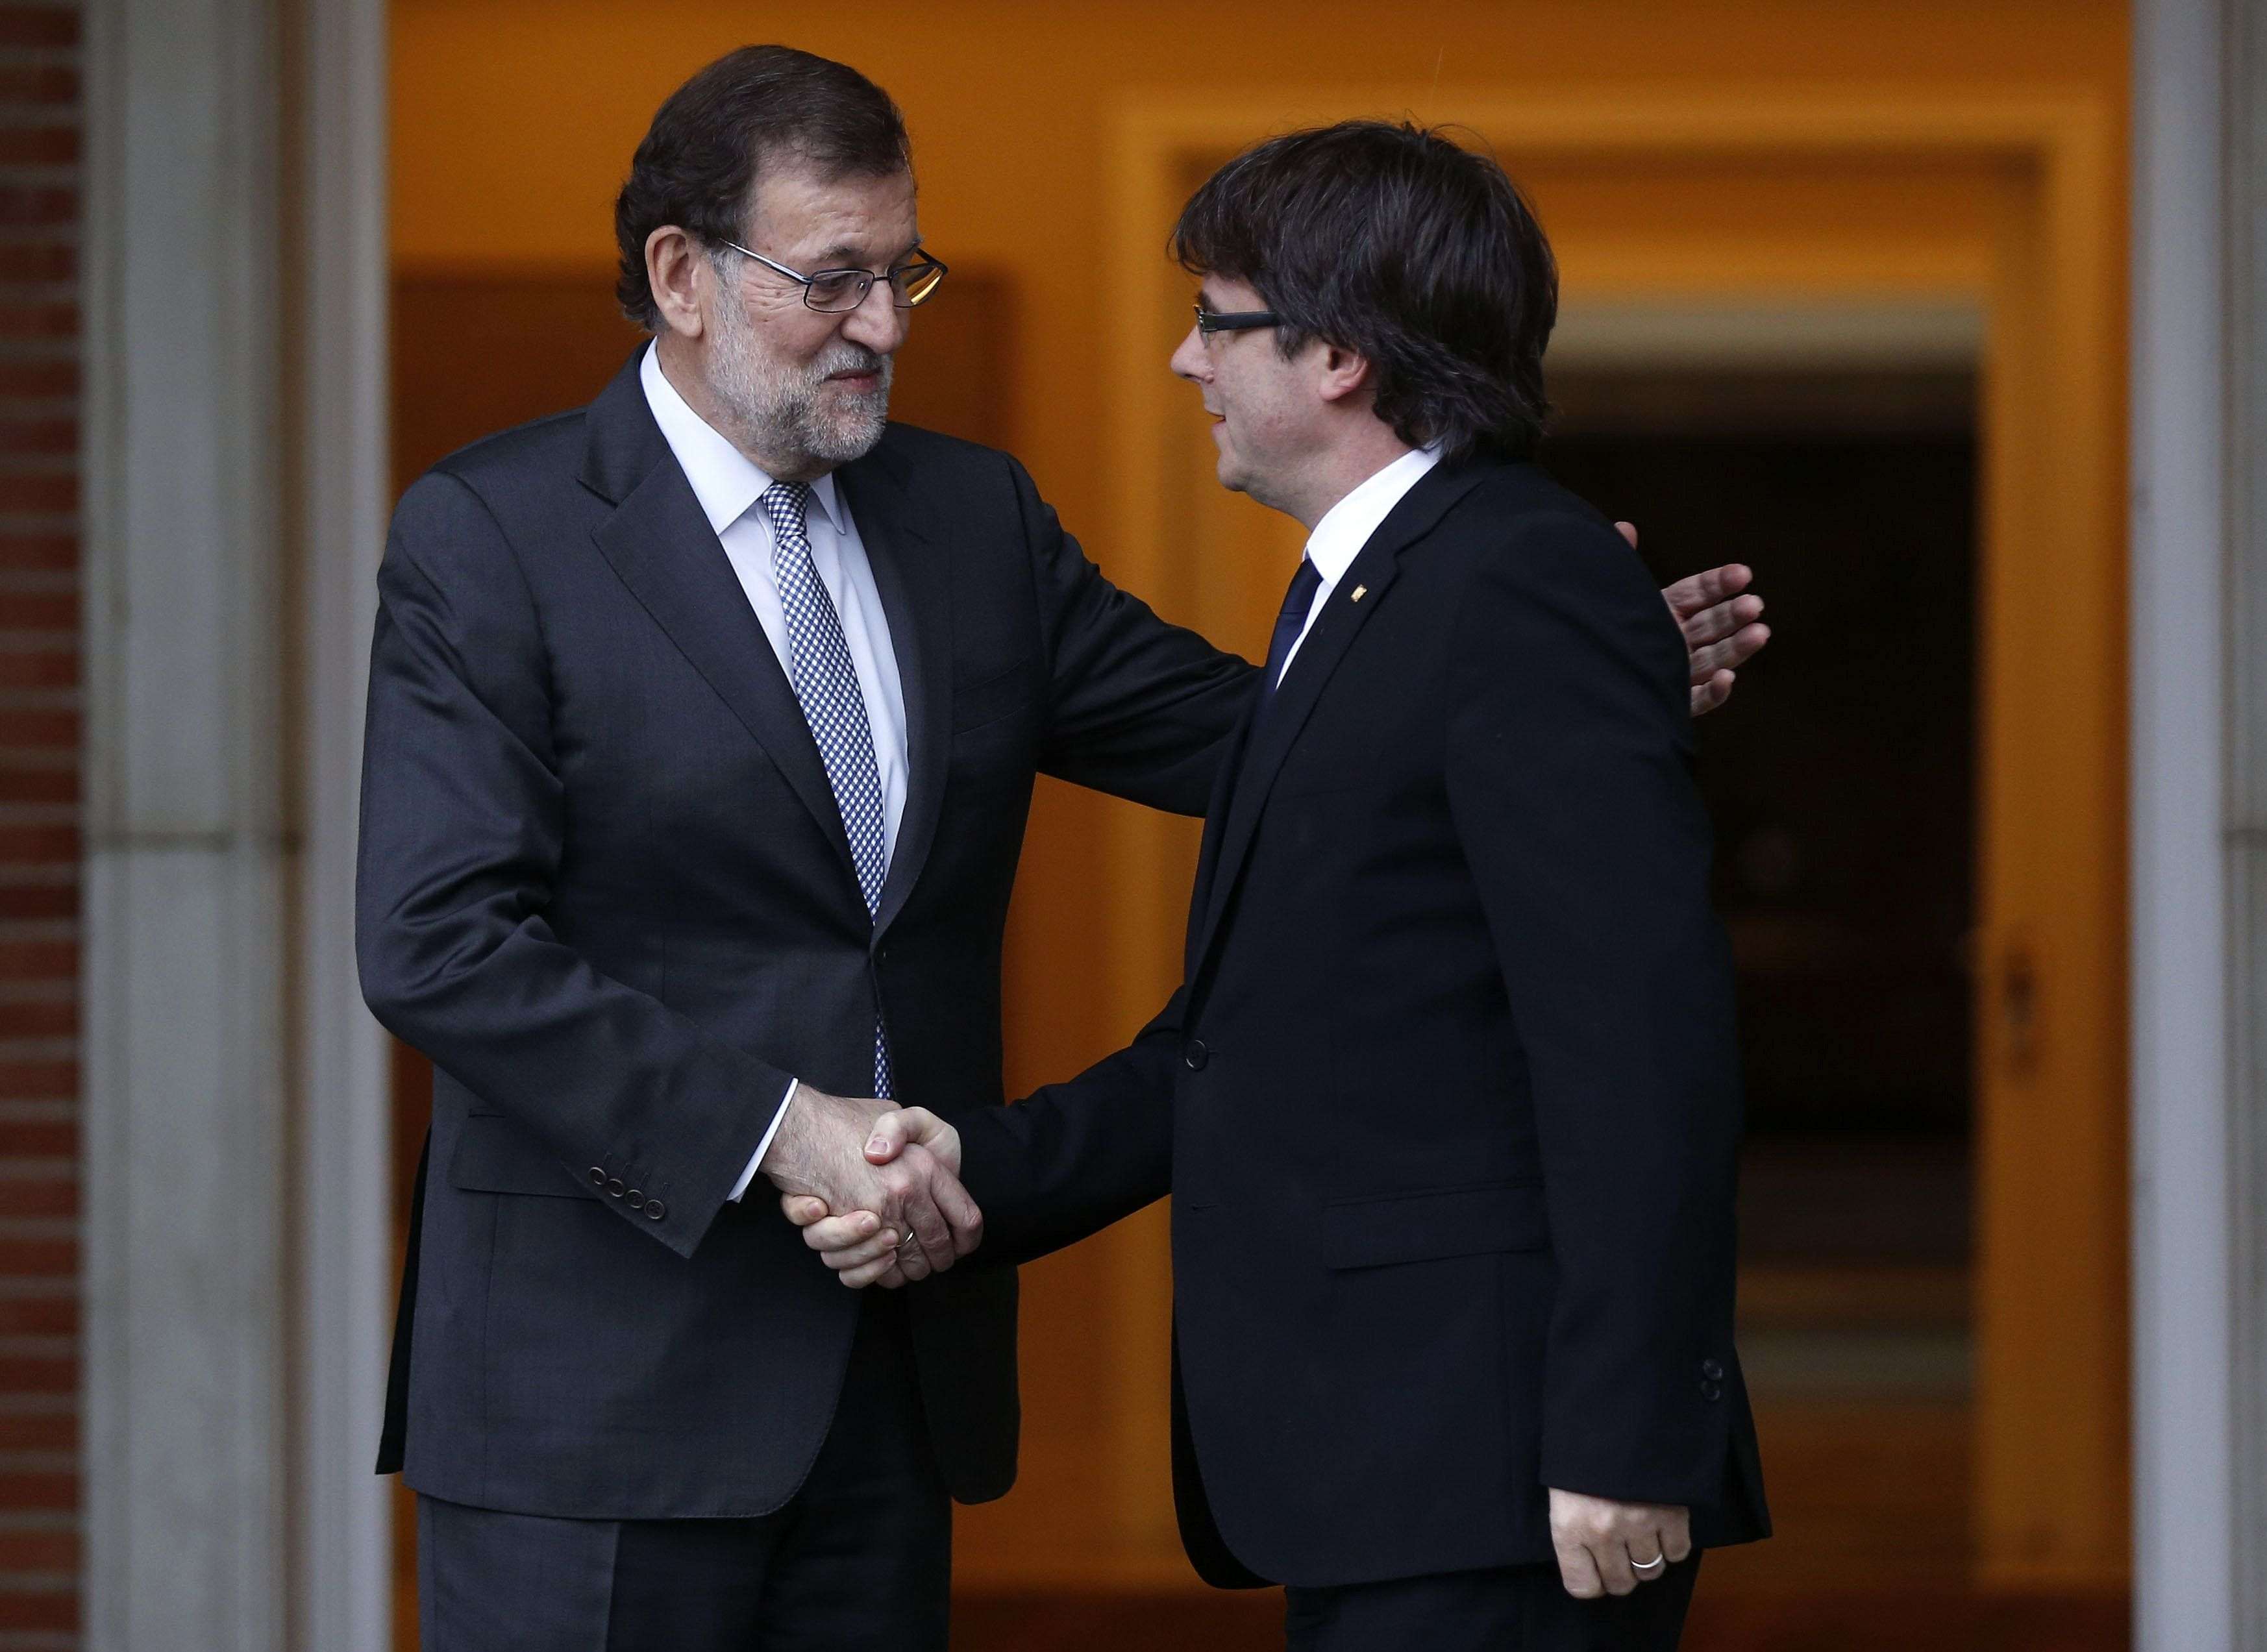 La invitació de Rajoy a Puigdemont: sense nom i demanant qui hi anirà de l'"entitat"